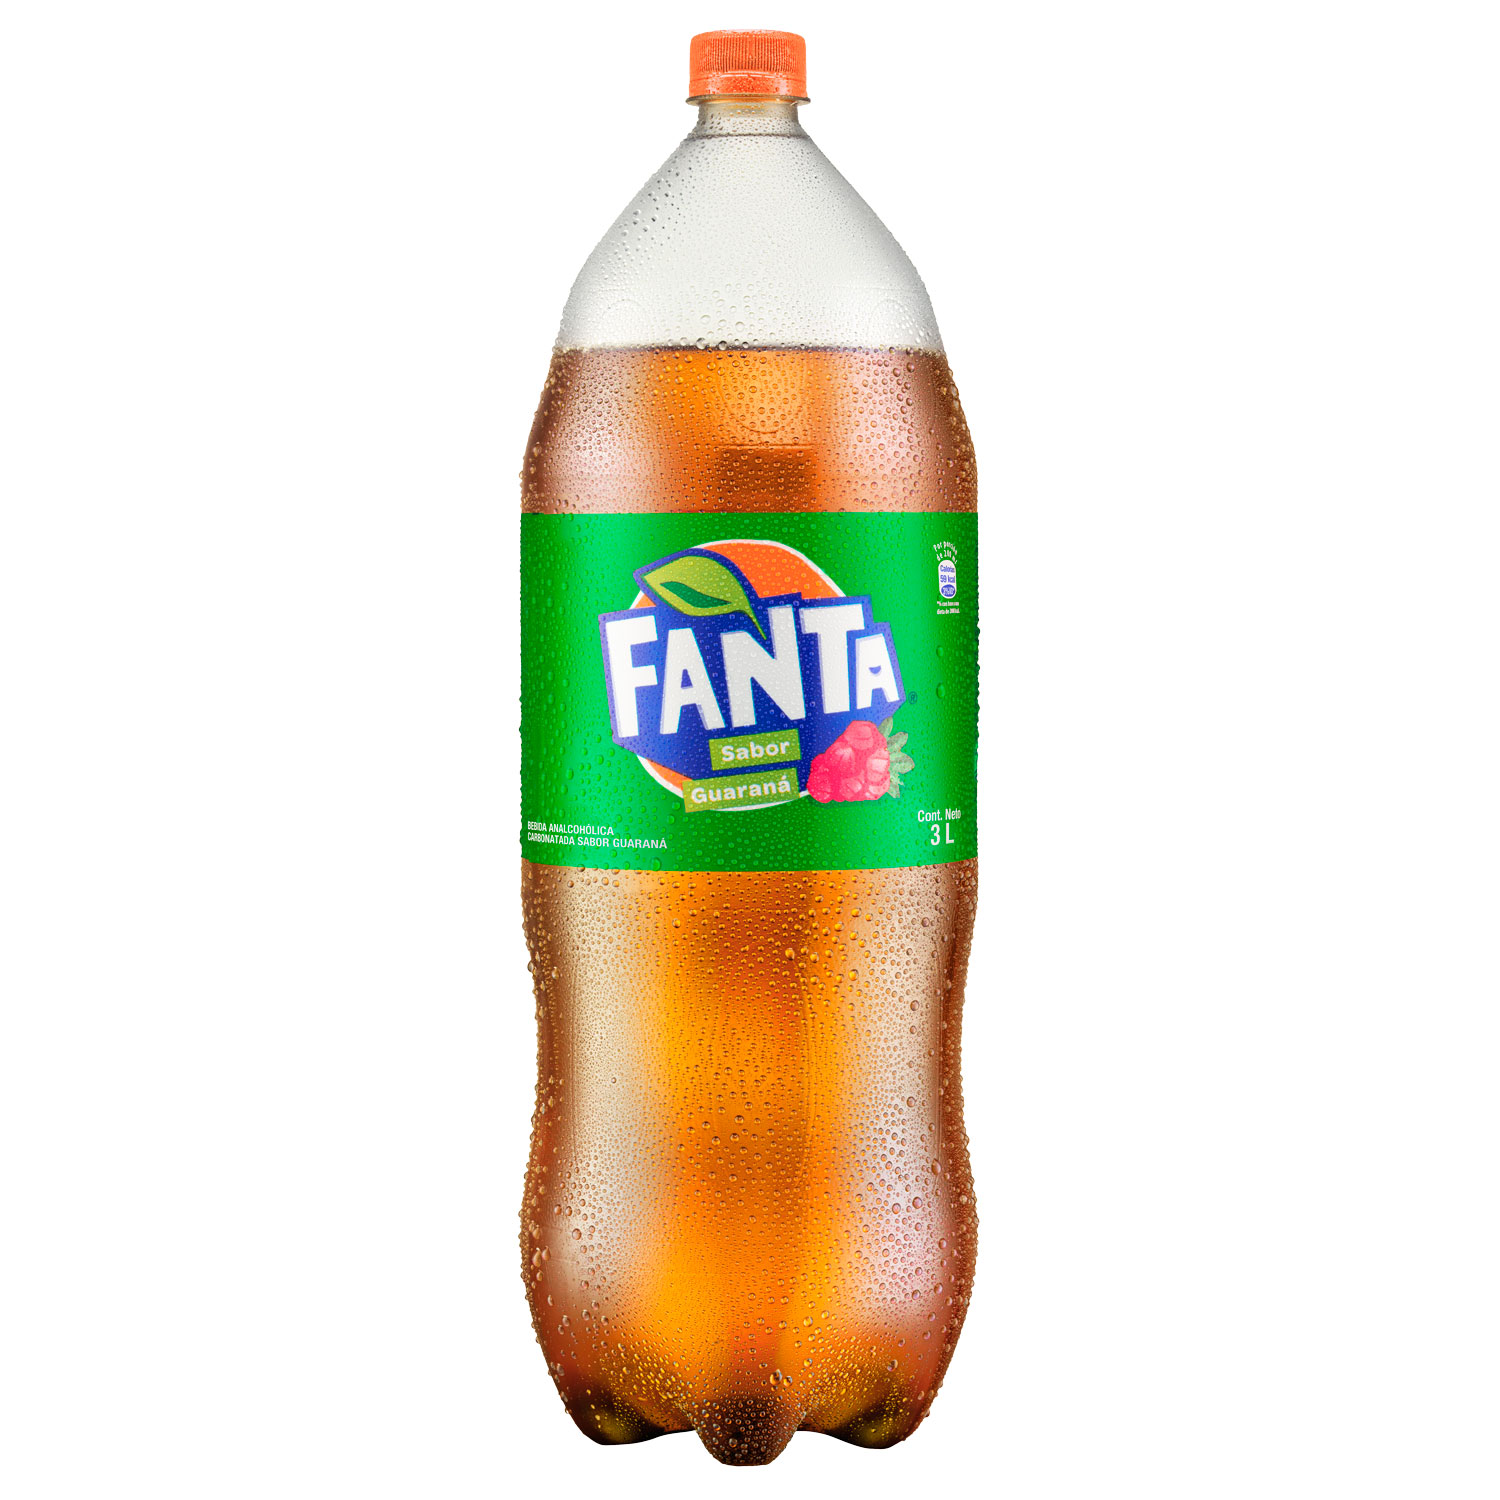 Botella de Fanta Guaraná 3L